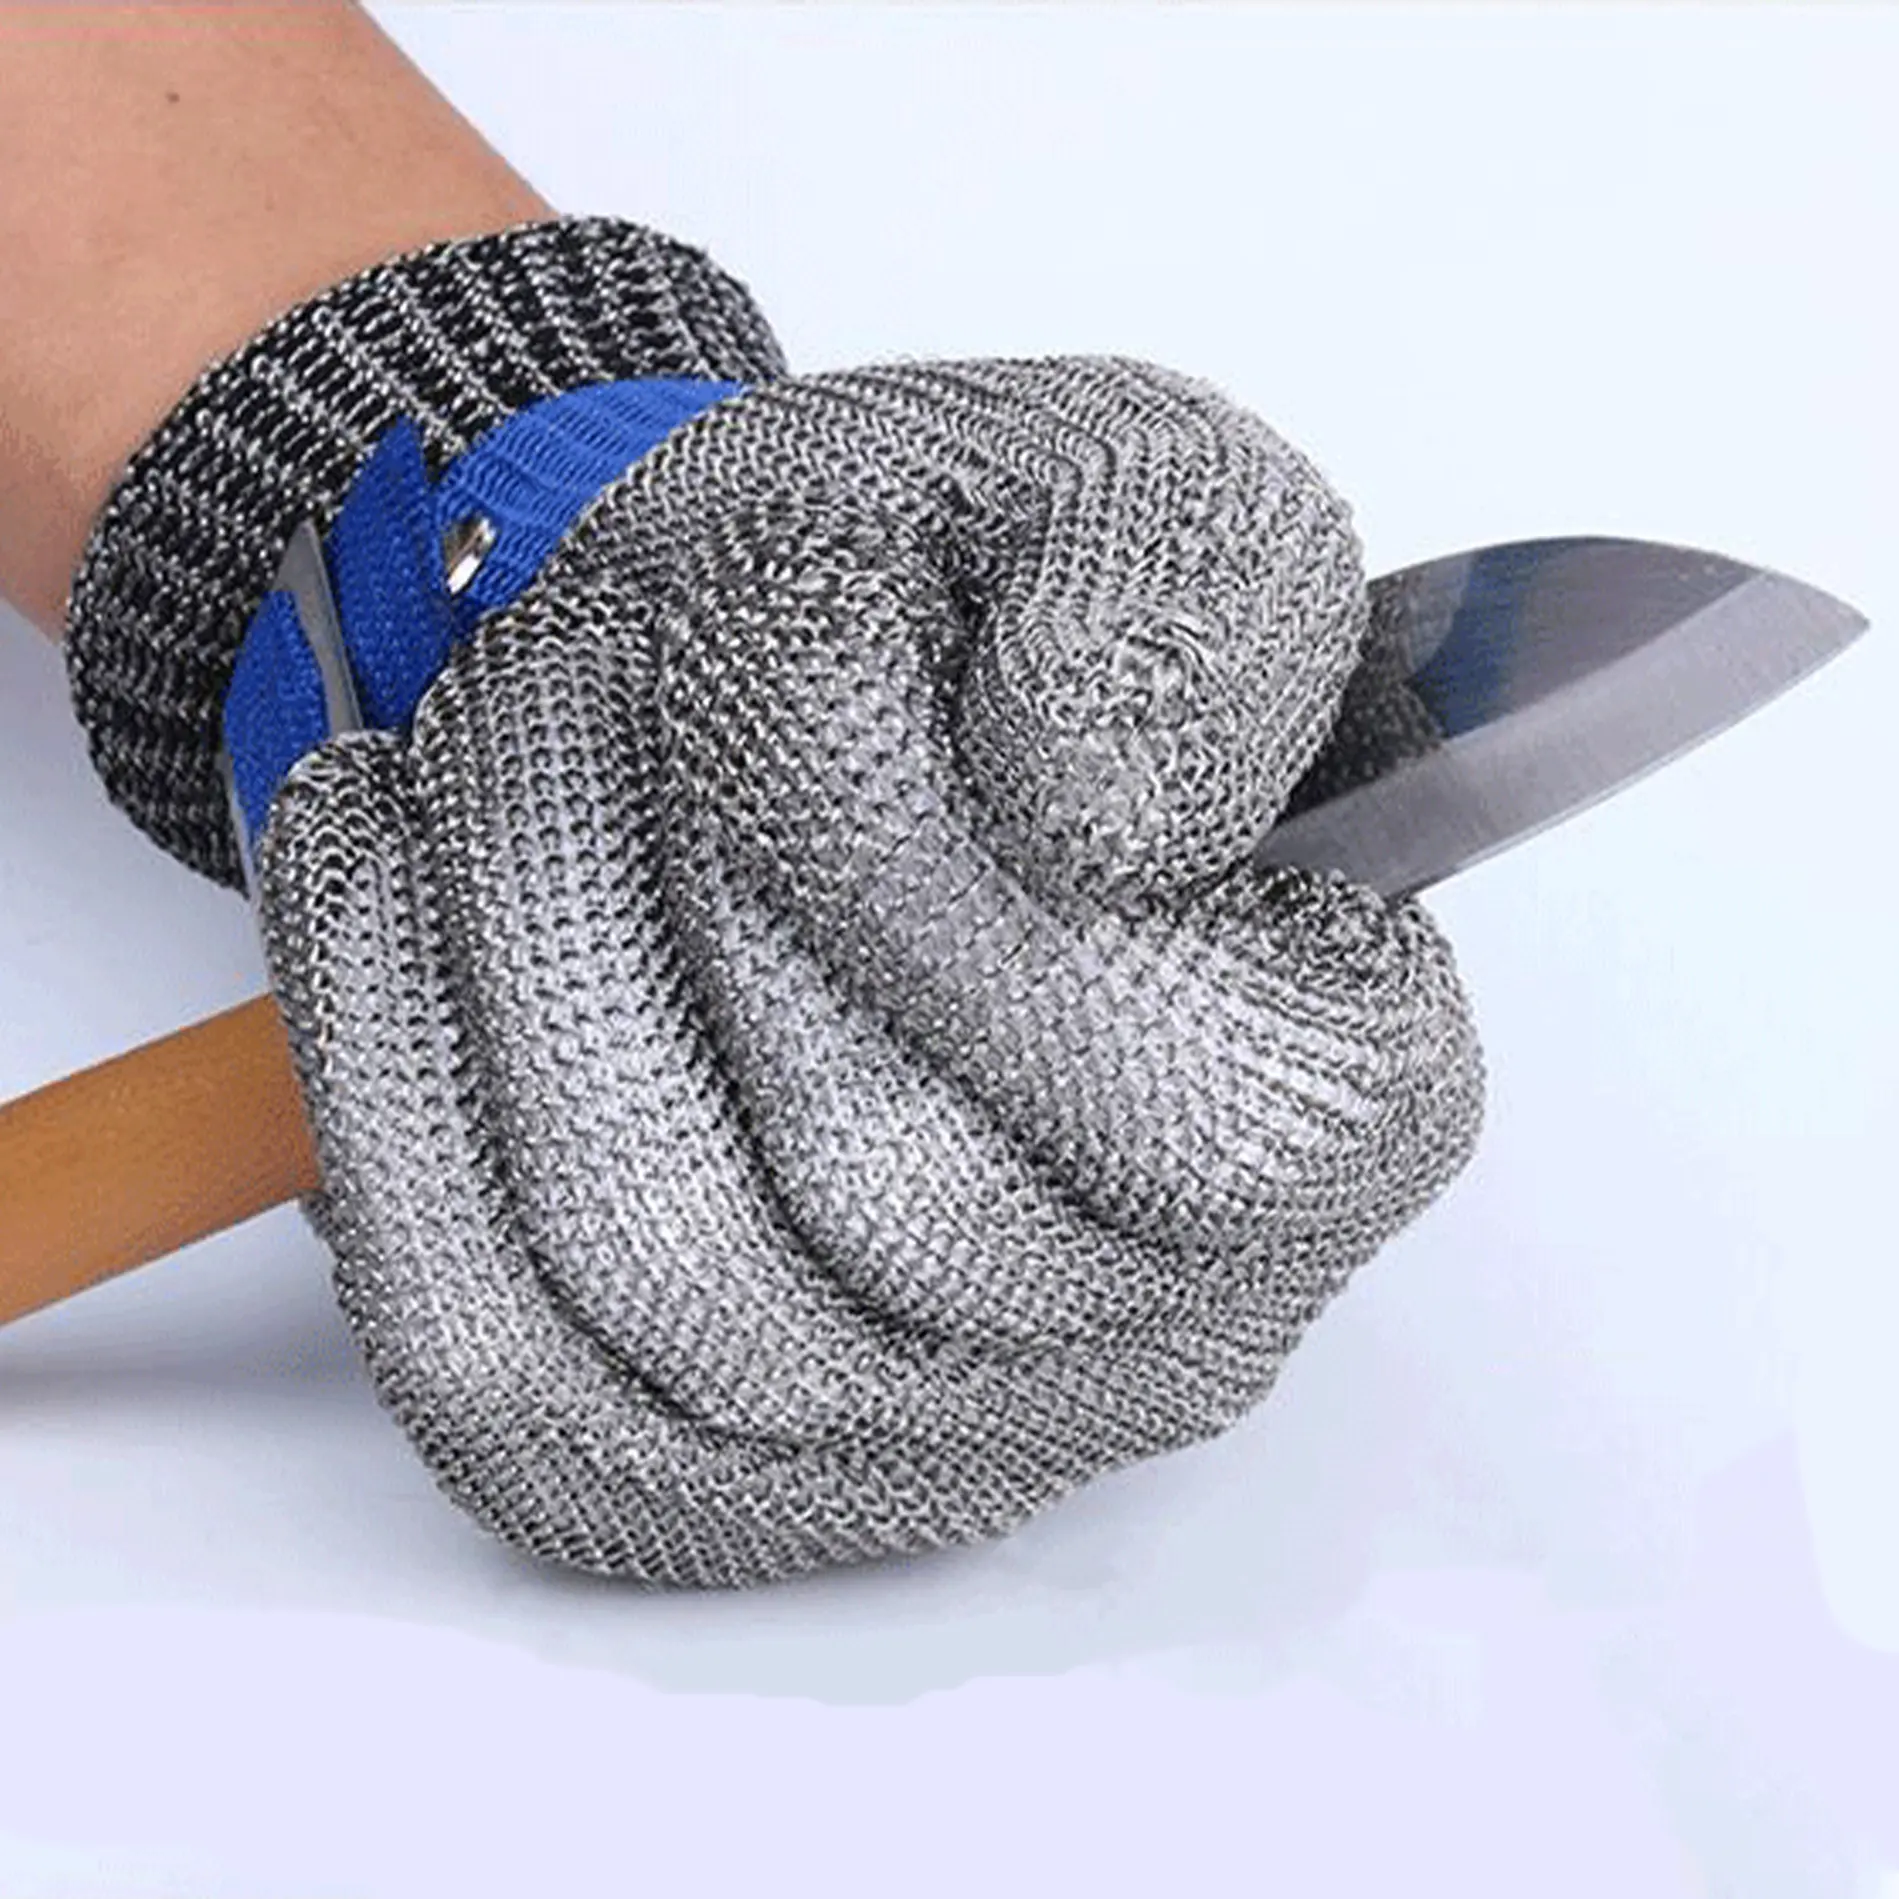 Bsp A9 guantes de acero inoxidable chống cắt Oyster shucking butcher an toàn dây thép không gỉ găng tay kim loại